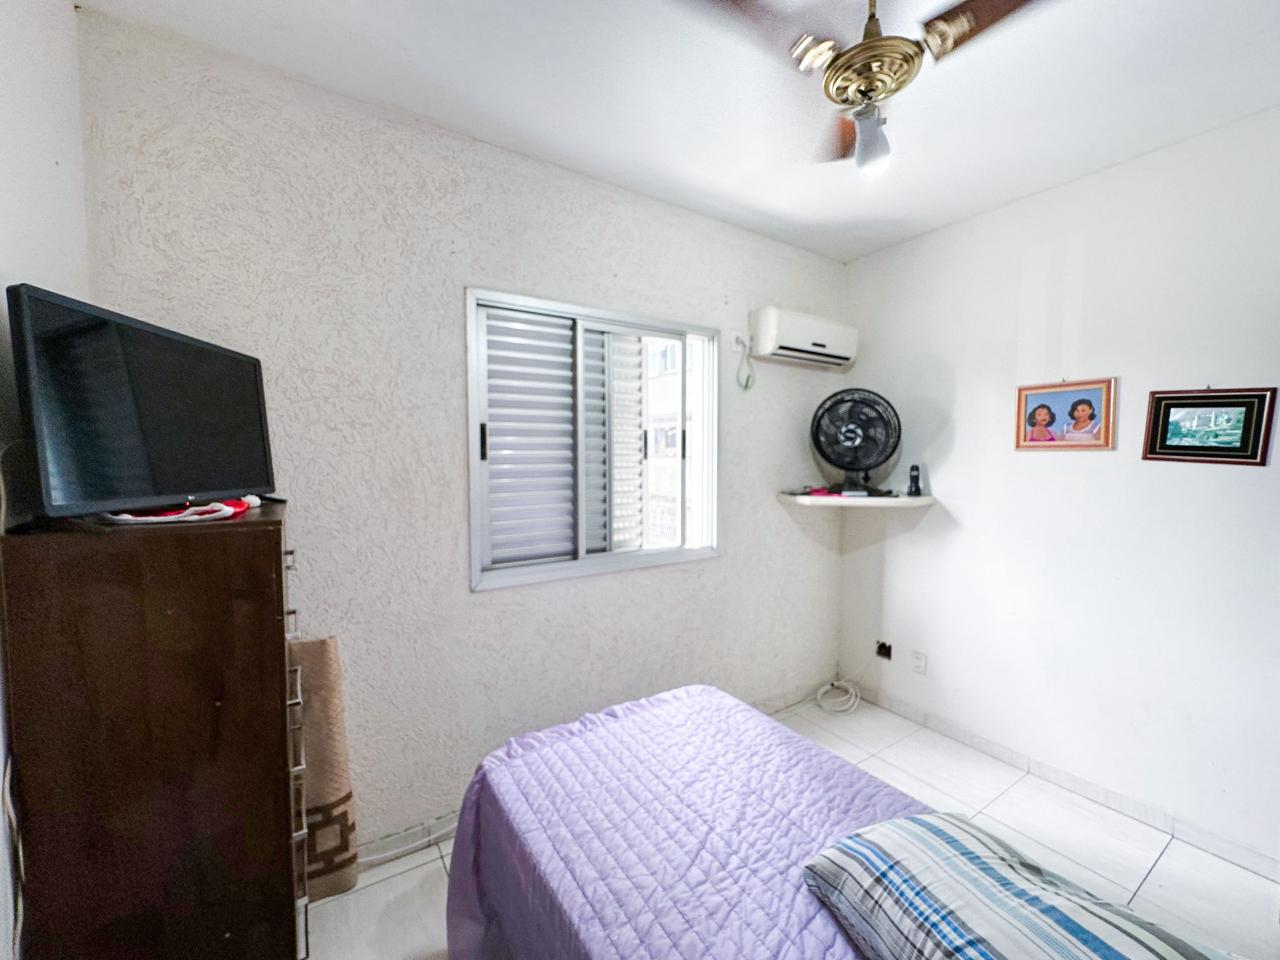 Encruzilhada apartamento com 2 dormitórios em piso frio, sala para 2 ambientes em piso frio com sacada e vista livre - foto 6